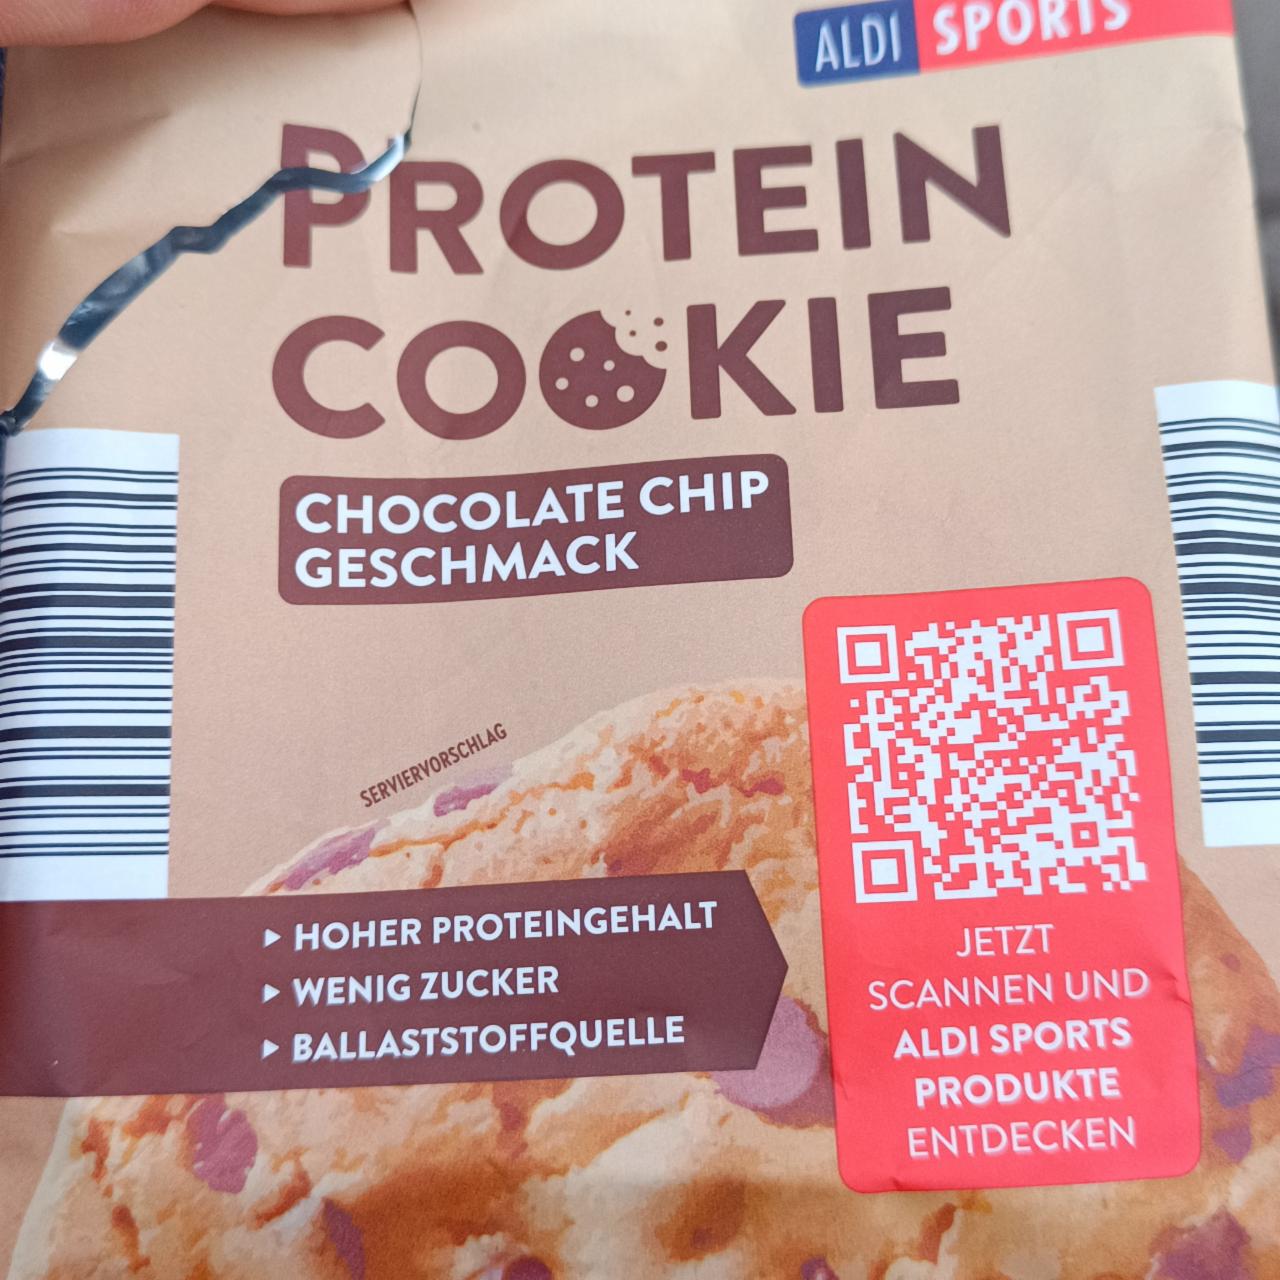 Fotografie - Protein Cookie Chocolate Chip Geschmack Aldi Sports